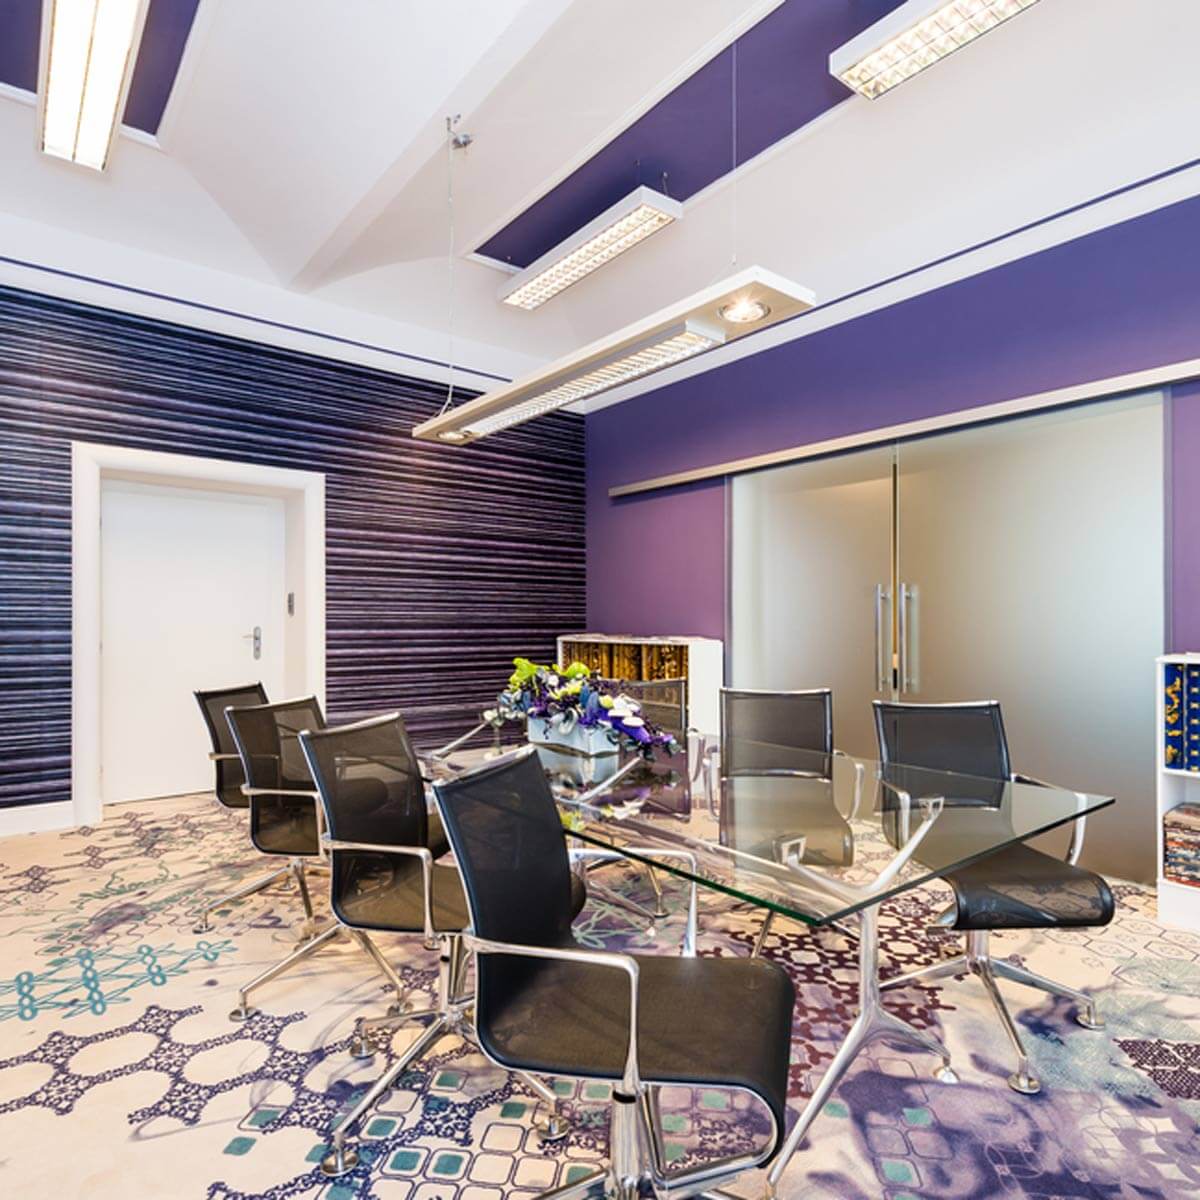 Giải mã 15 màu sơn văn phòng được các nhà thiết kế đặc biệt yêu thích năm 2023 > Thiết kế văn phòng lãng mạn với sơn tường màu tím